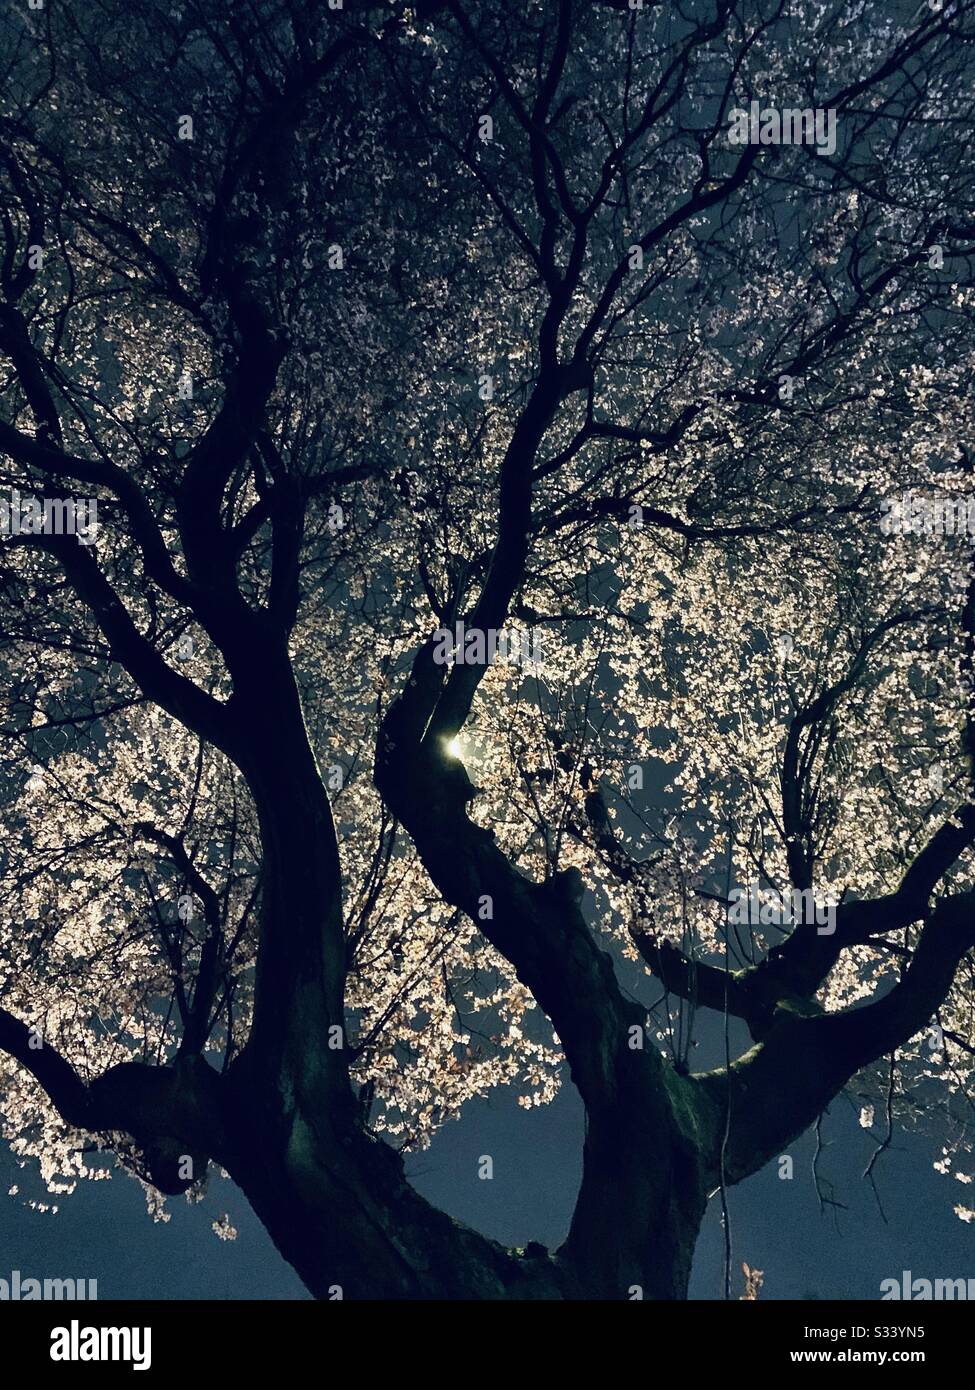 Blumbaum bei Nacht, beleuchtet durch Straßenlicht Stockfoto